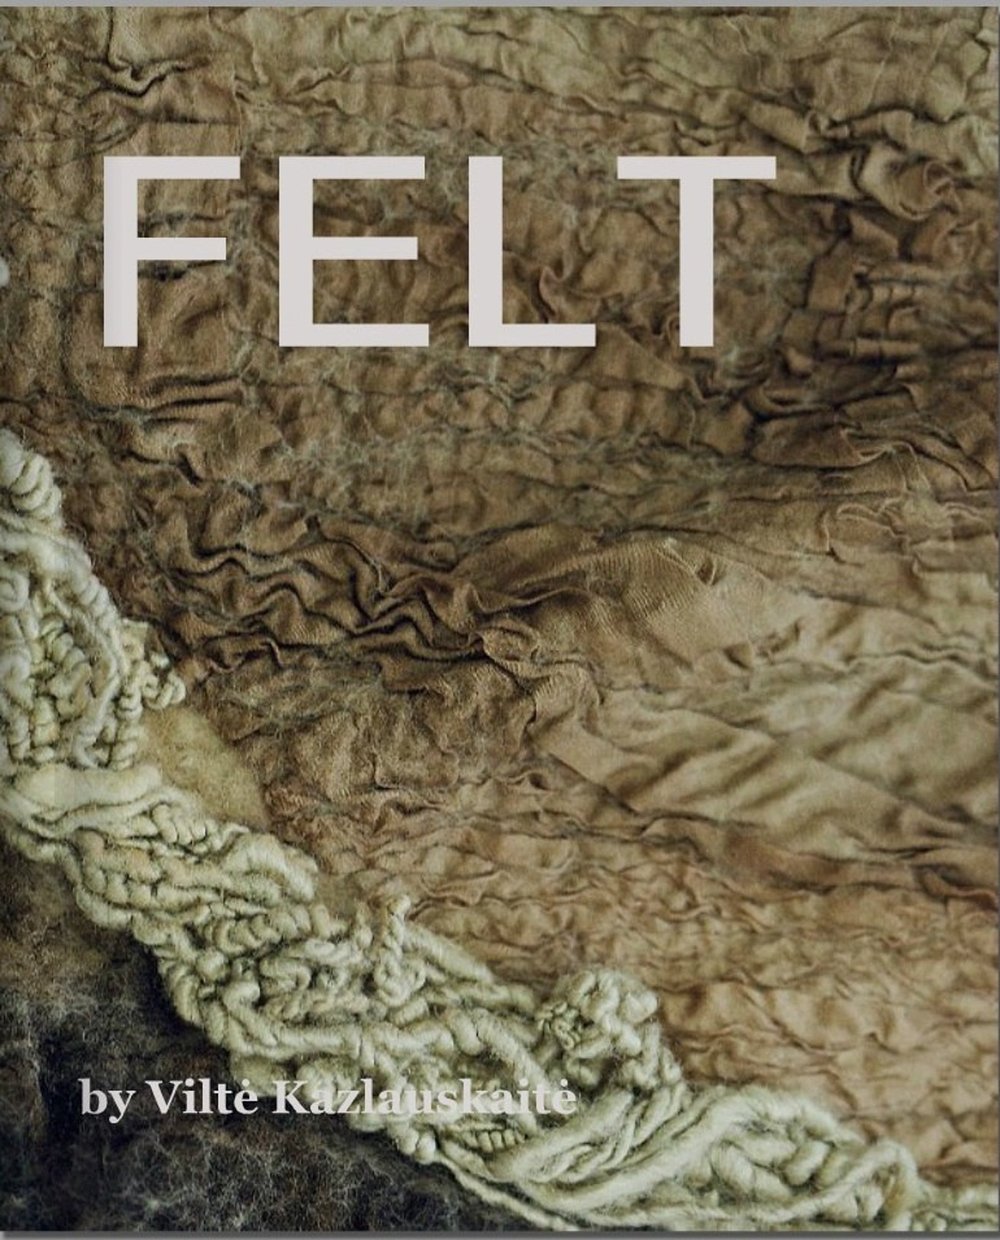 Image of FELT (Veltinis) book by Vilte Kazlauskaite in pdf file